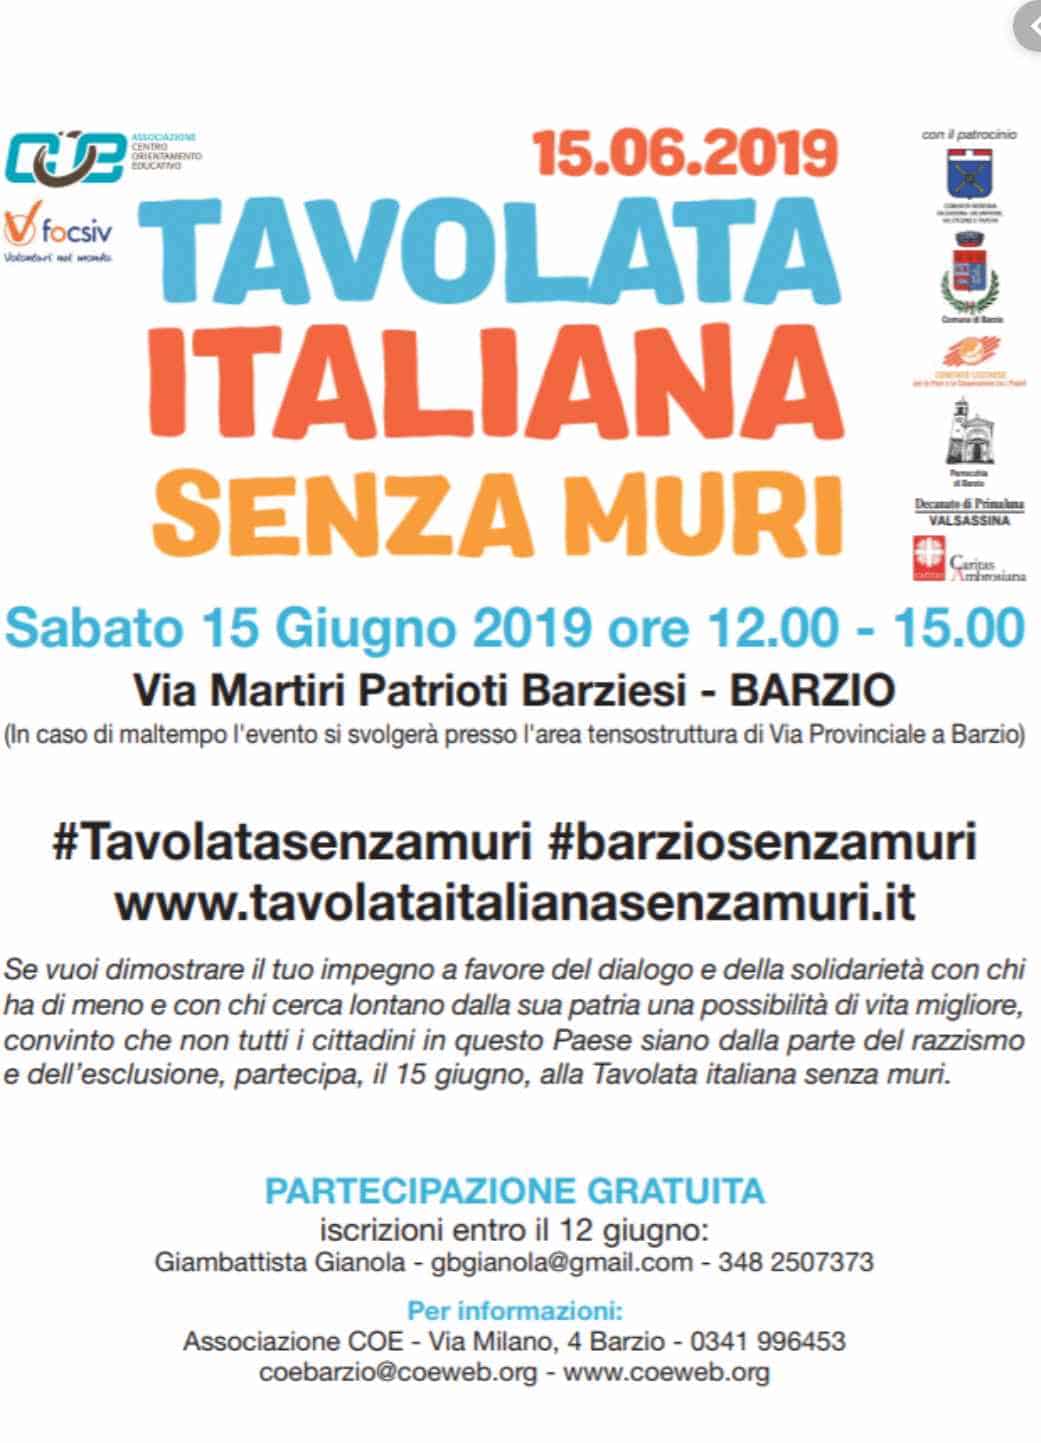 "Tavolata Italiana Senza Muri", una iniziativa esemplare ma divisiva nelle intenzioni 2